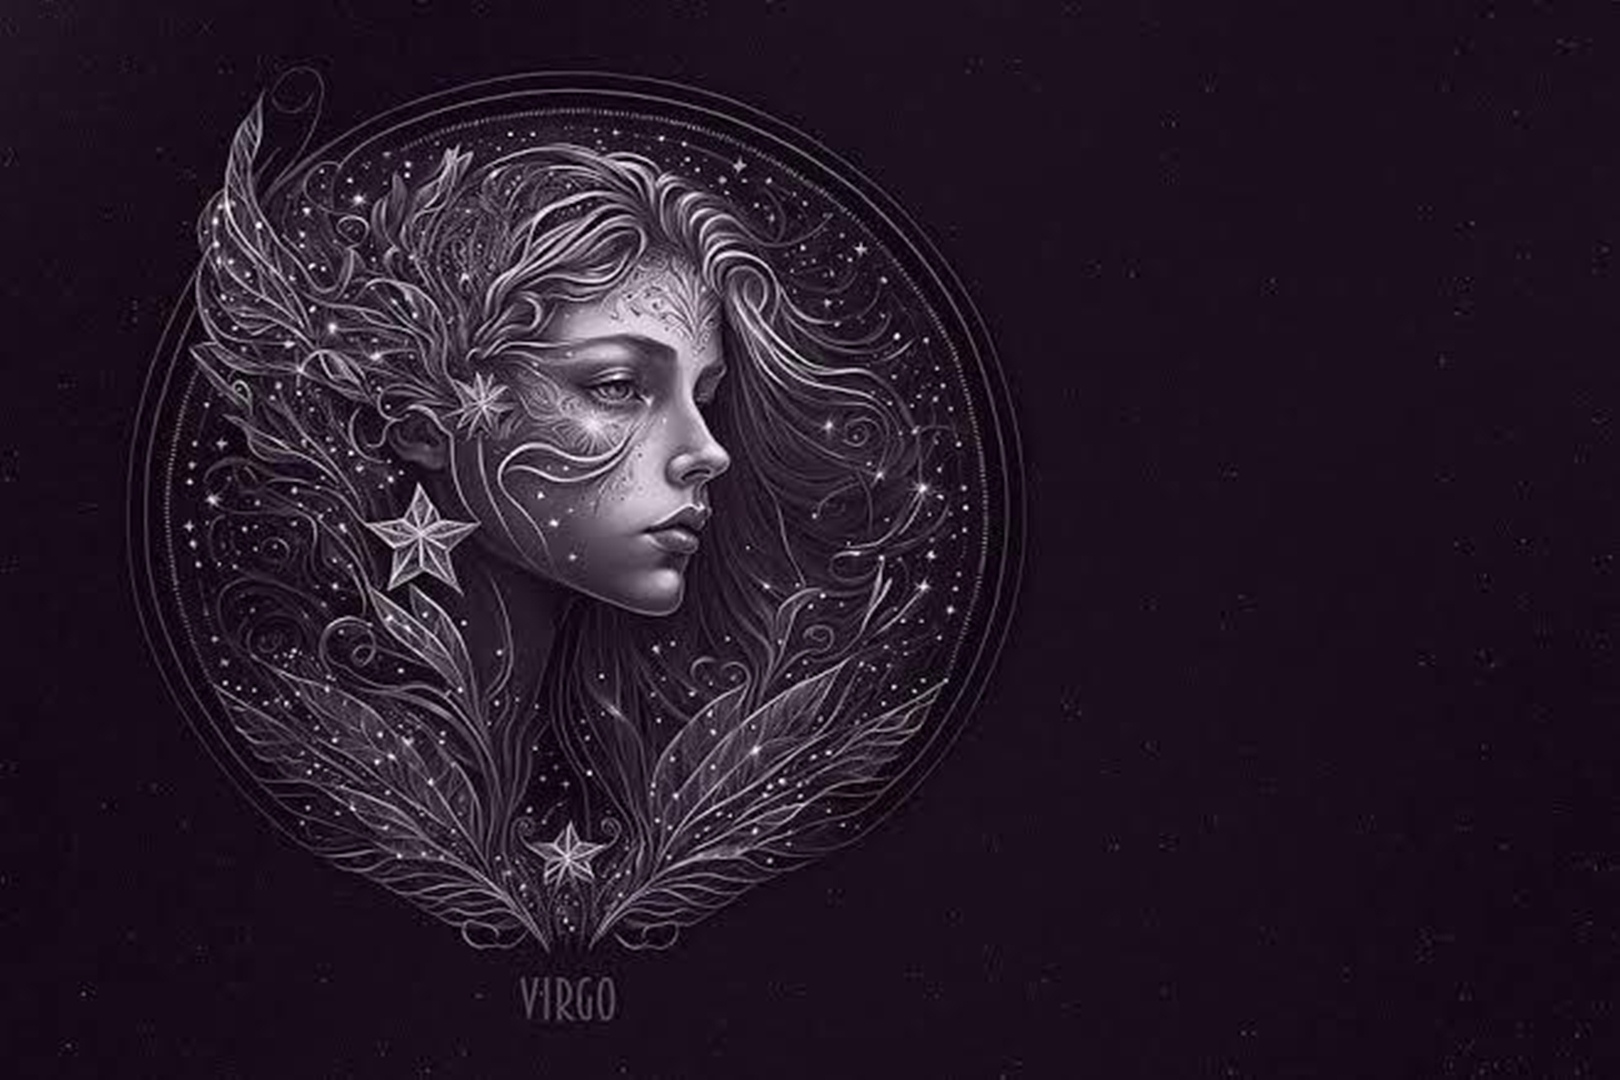 Ramalan Zodiak Virgo, Mengenal Lebih Dekat dengan Tanda Bumi yang Analitis dan Perfeksionis